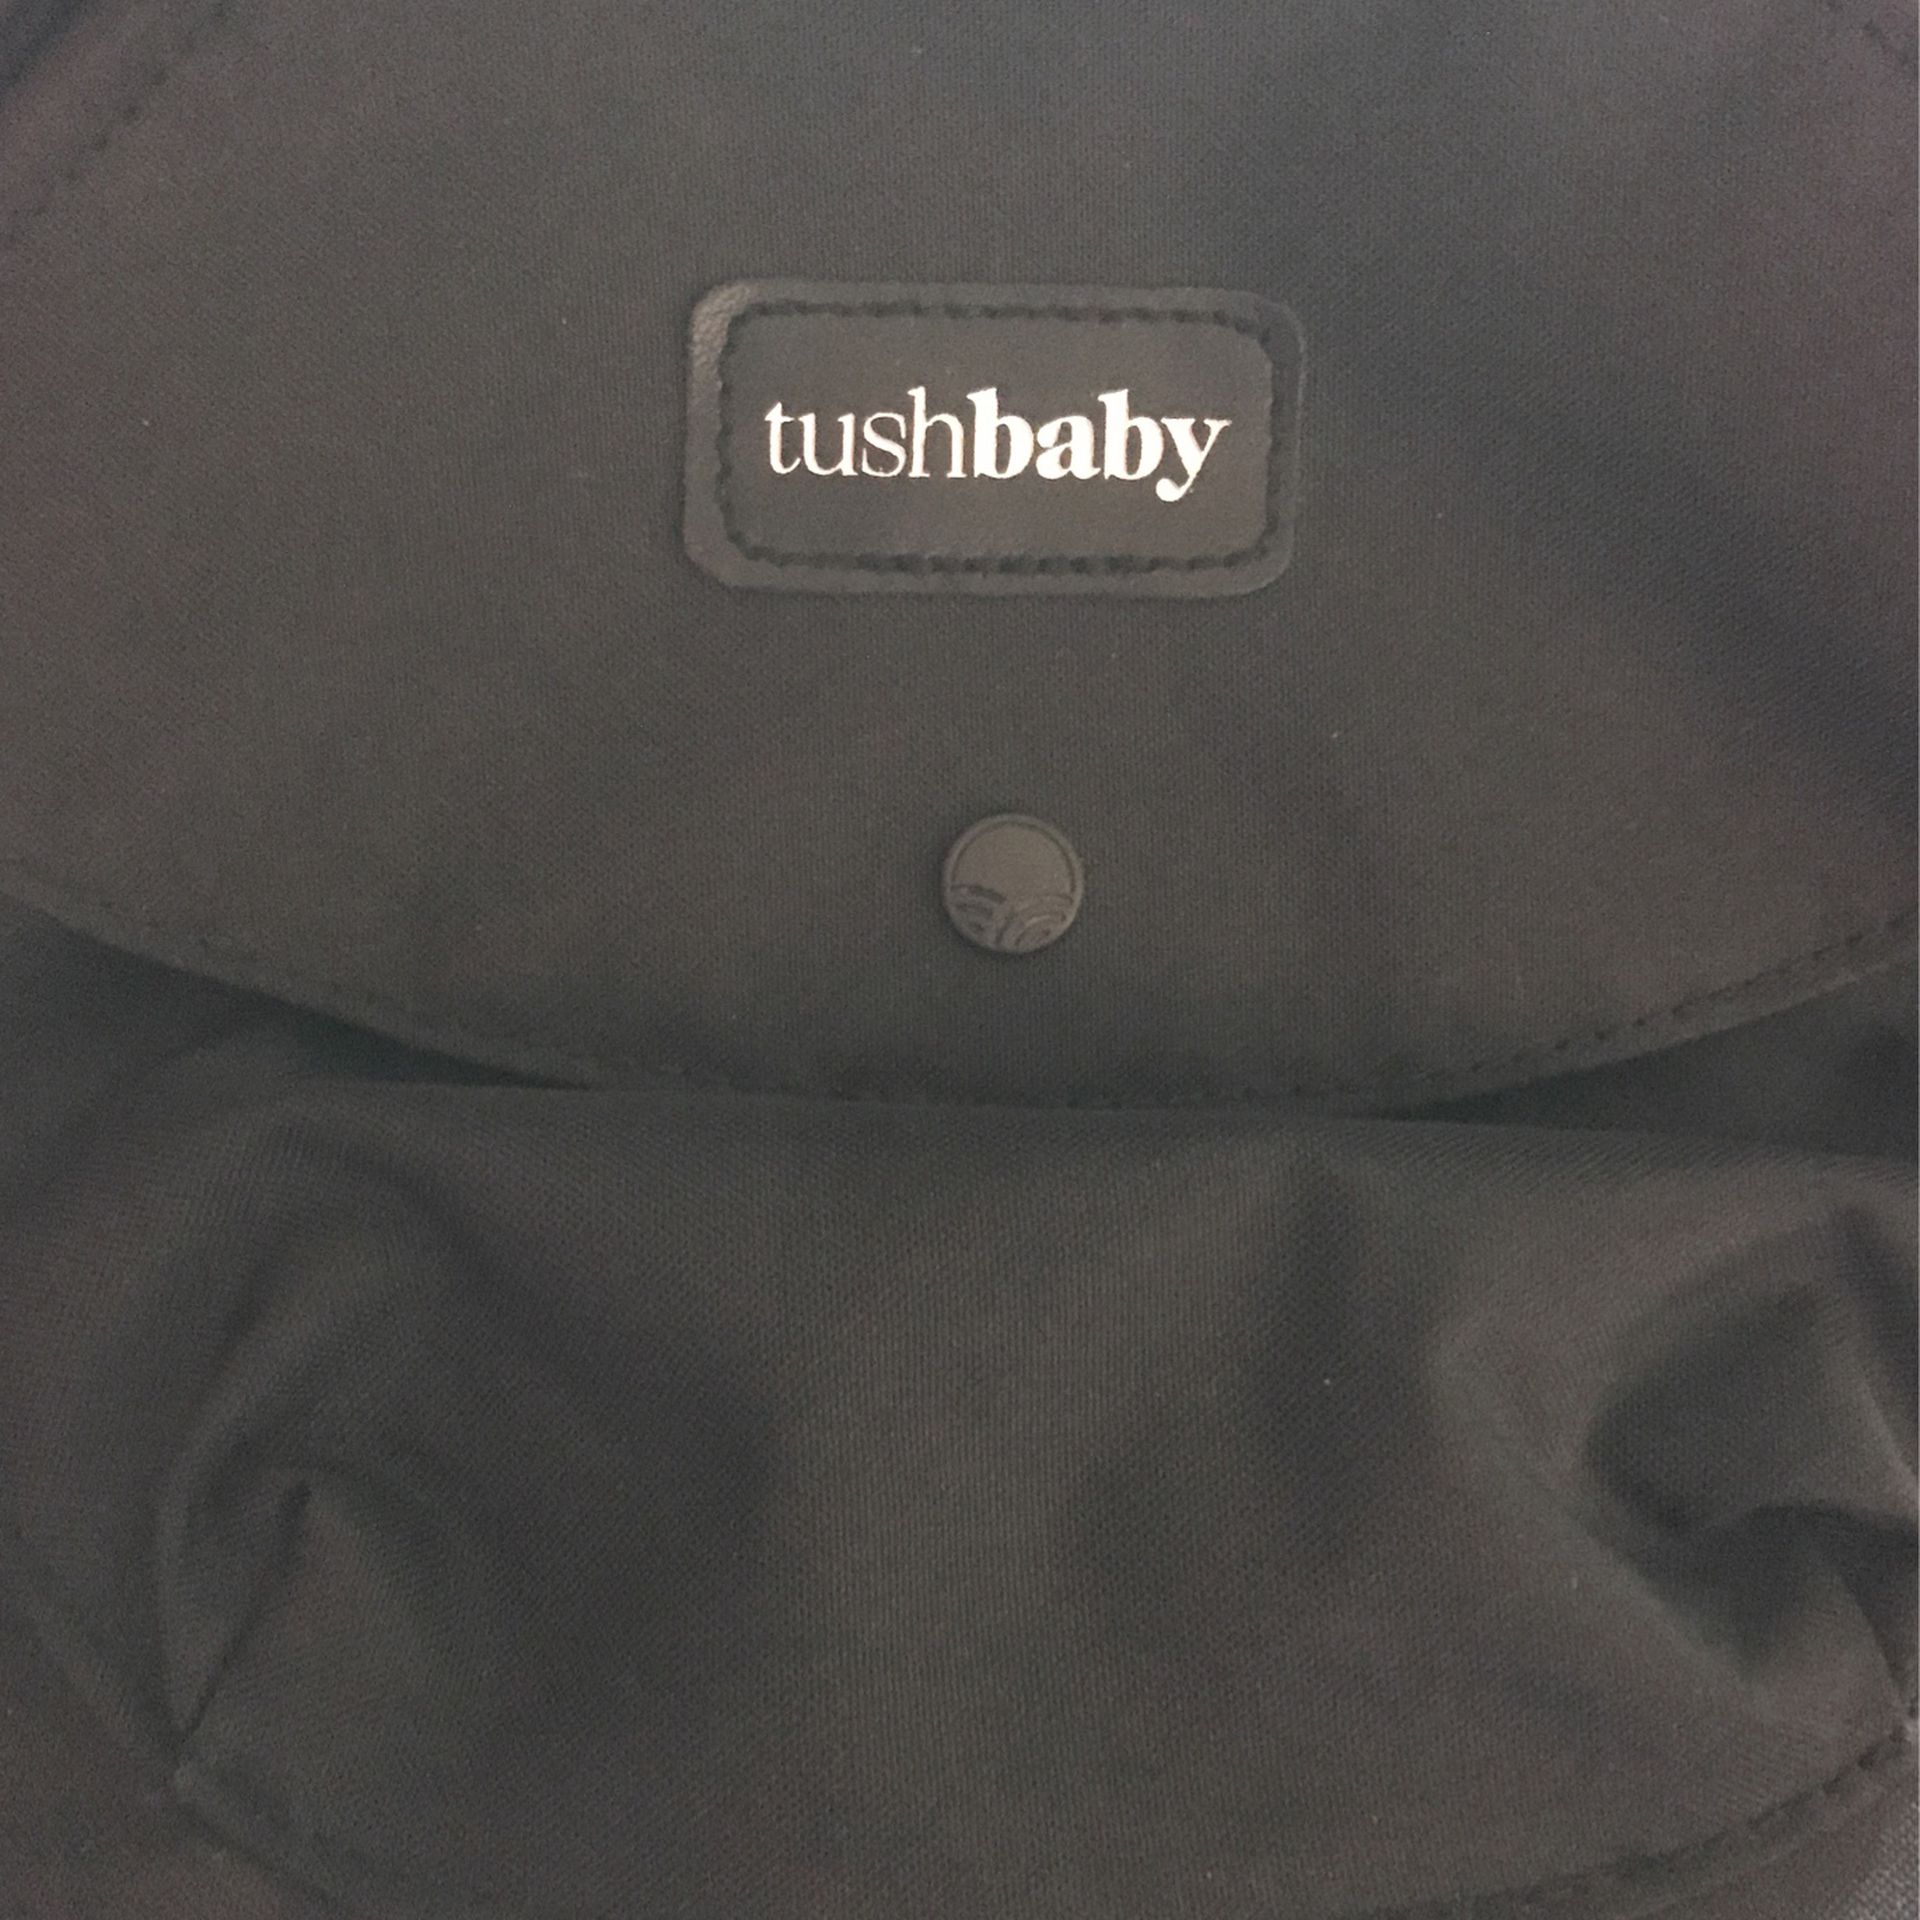 Tushbaby